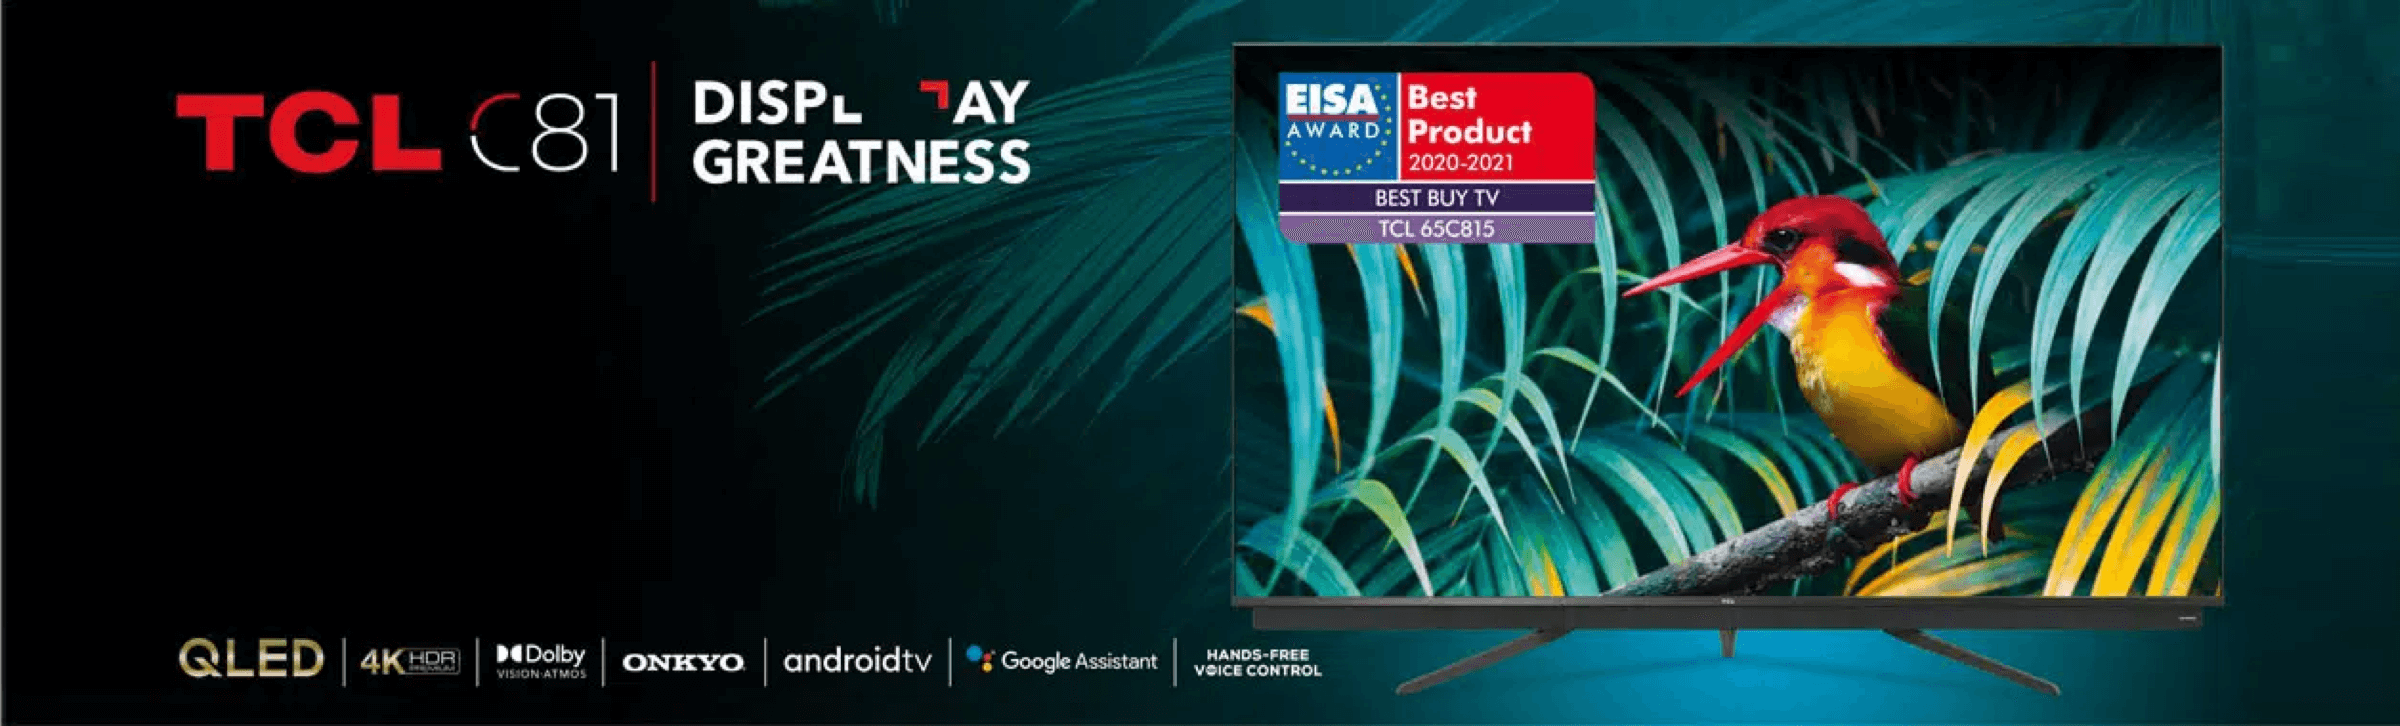 65C815 win EISA Award Best Buy 2020-2021